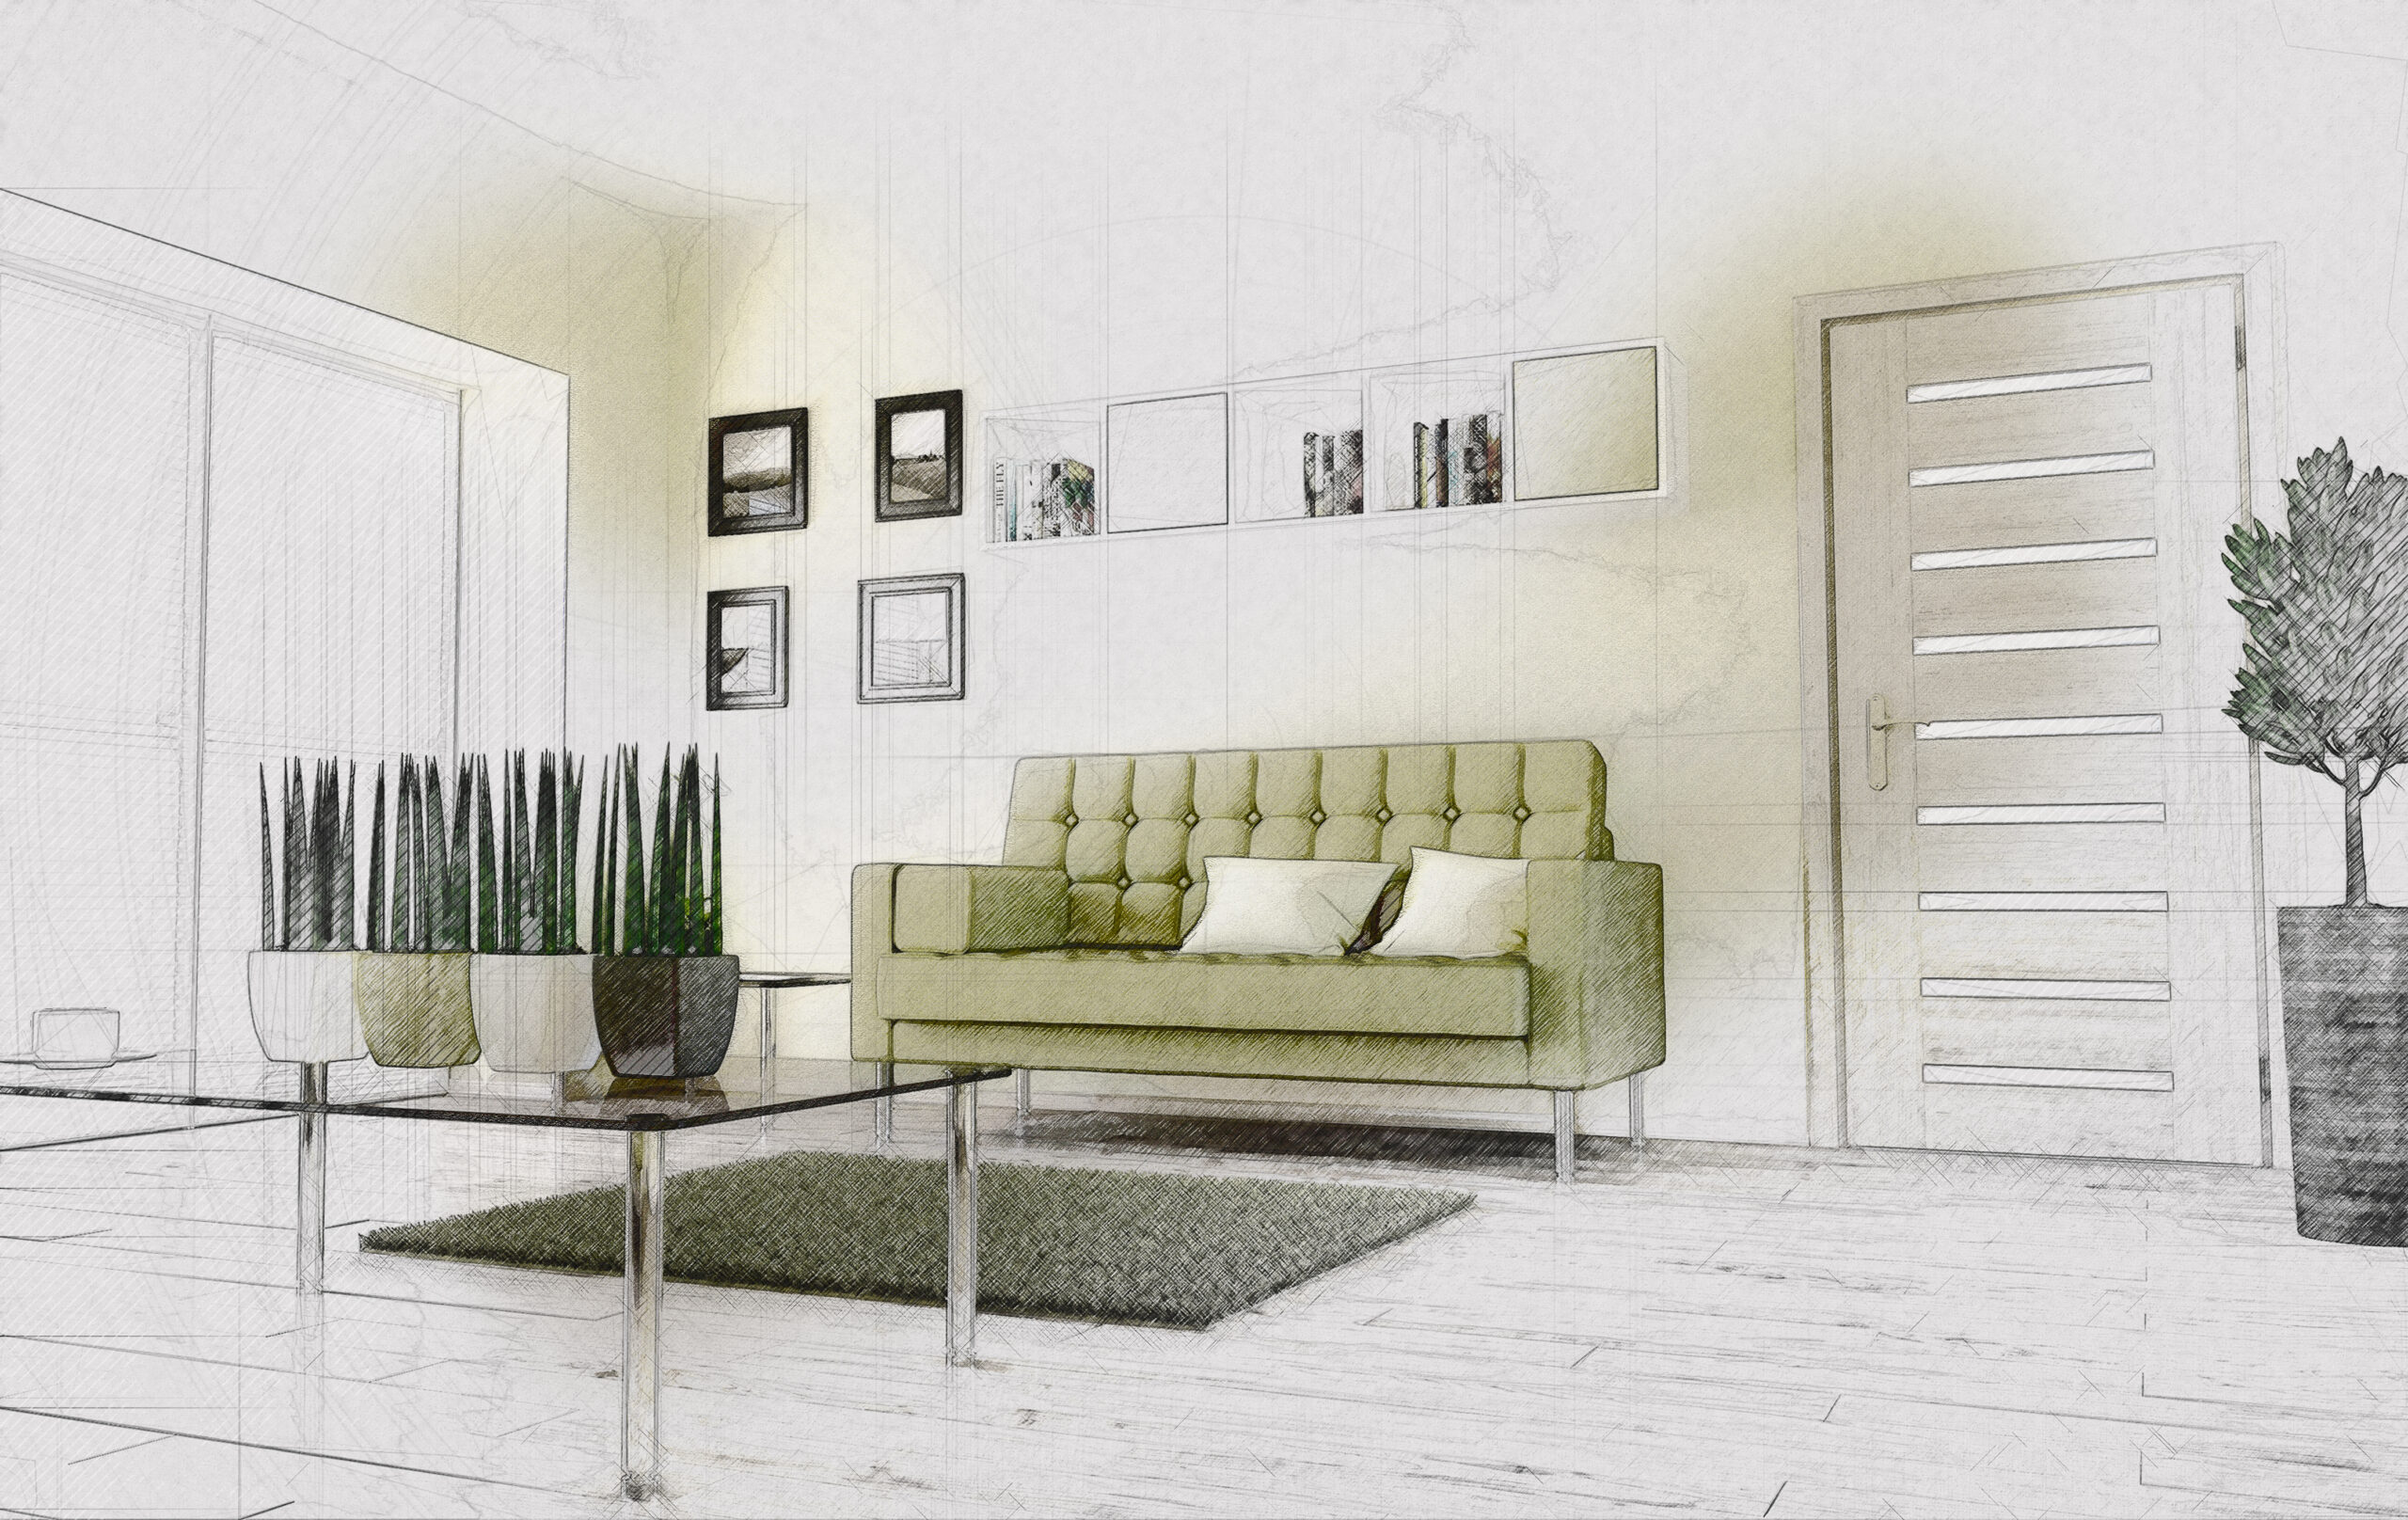 3D modern interior in sketch style design